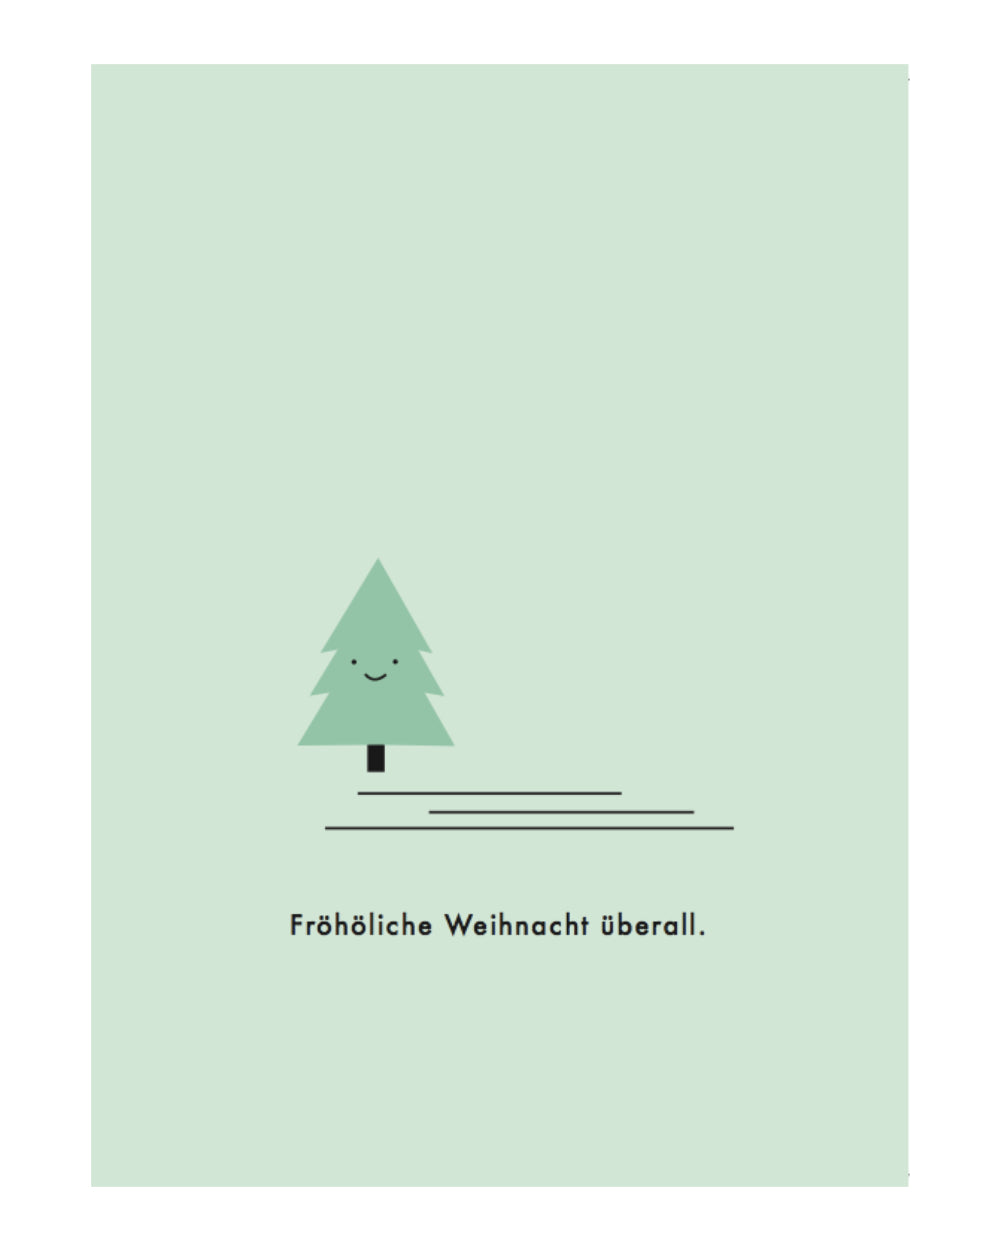 Papier Ahoi - Postkarte "Fröhöliche Weihnacht überall."